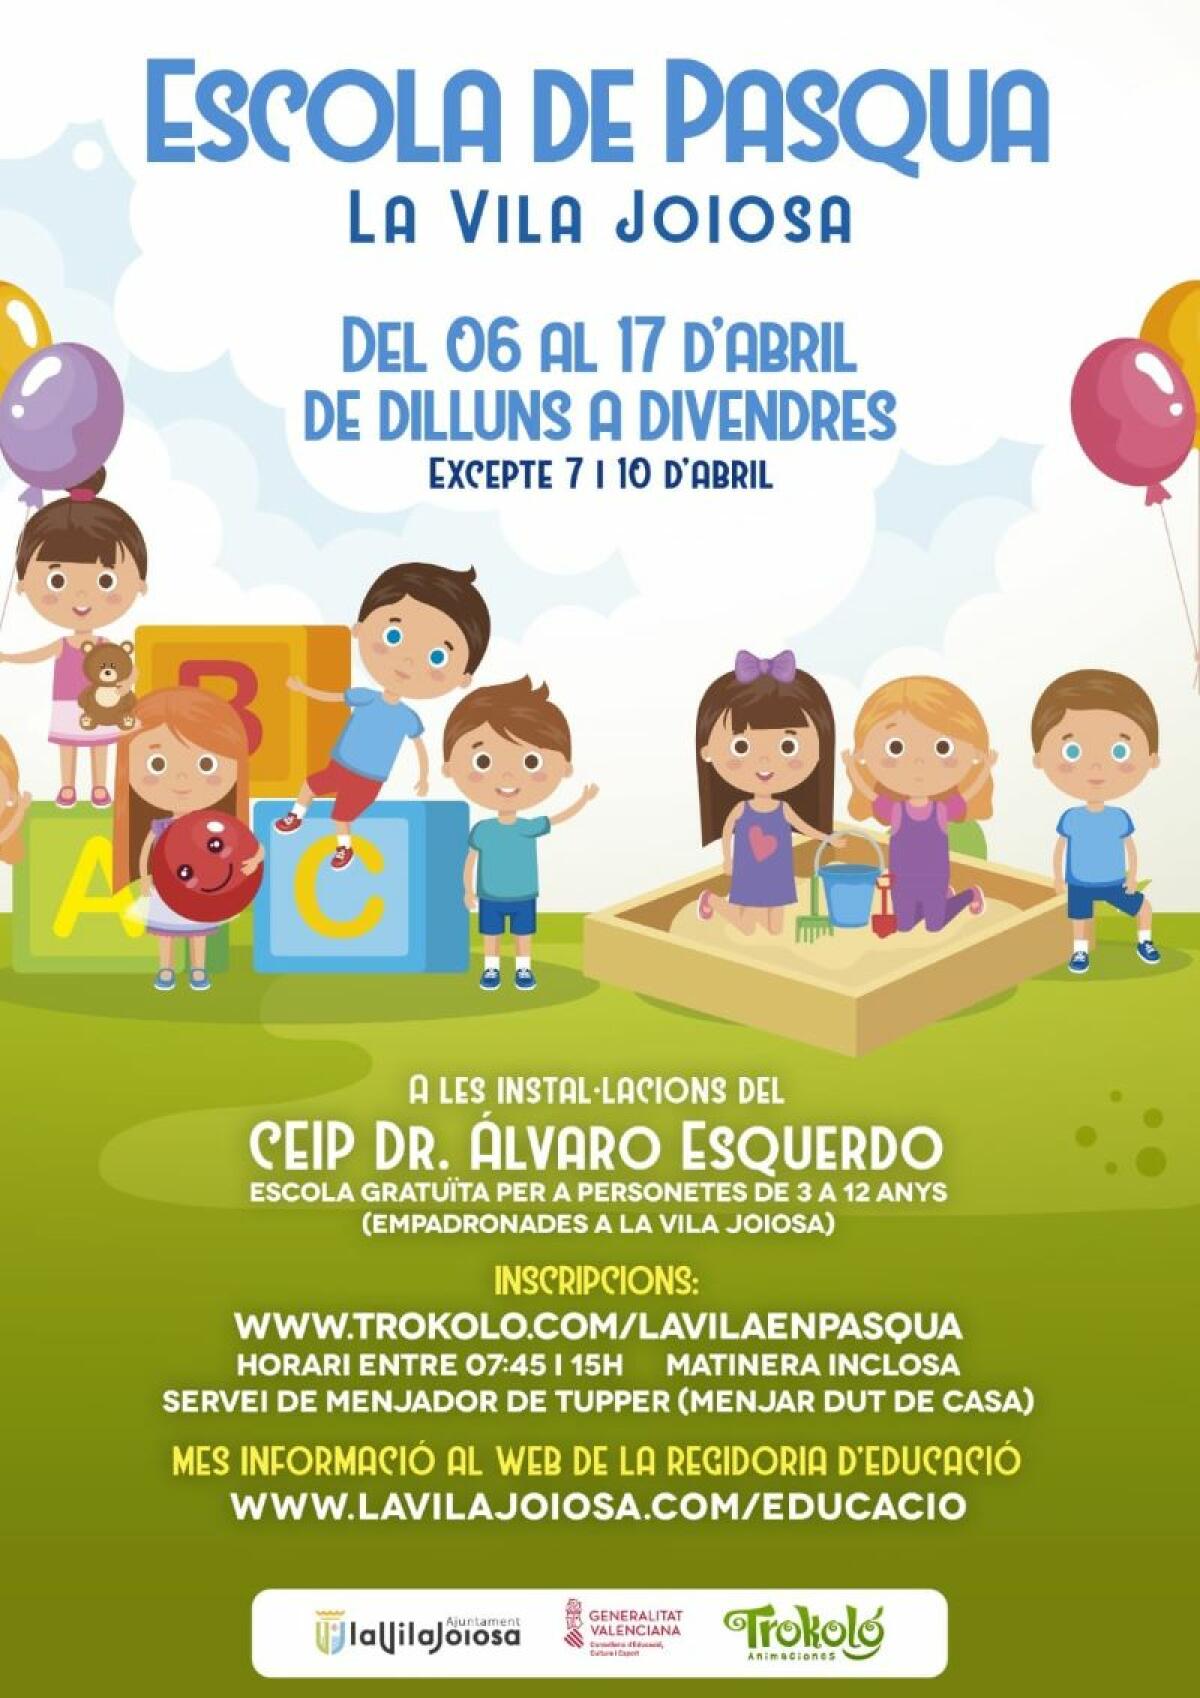 La concejalía de Educación del Ayuntamiento de la Vila Joiosa organiza la ‘Escuela de Pascua’